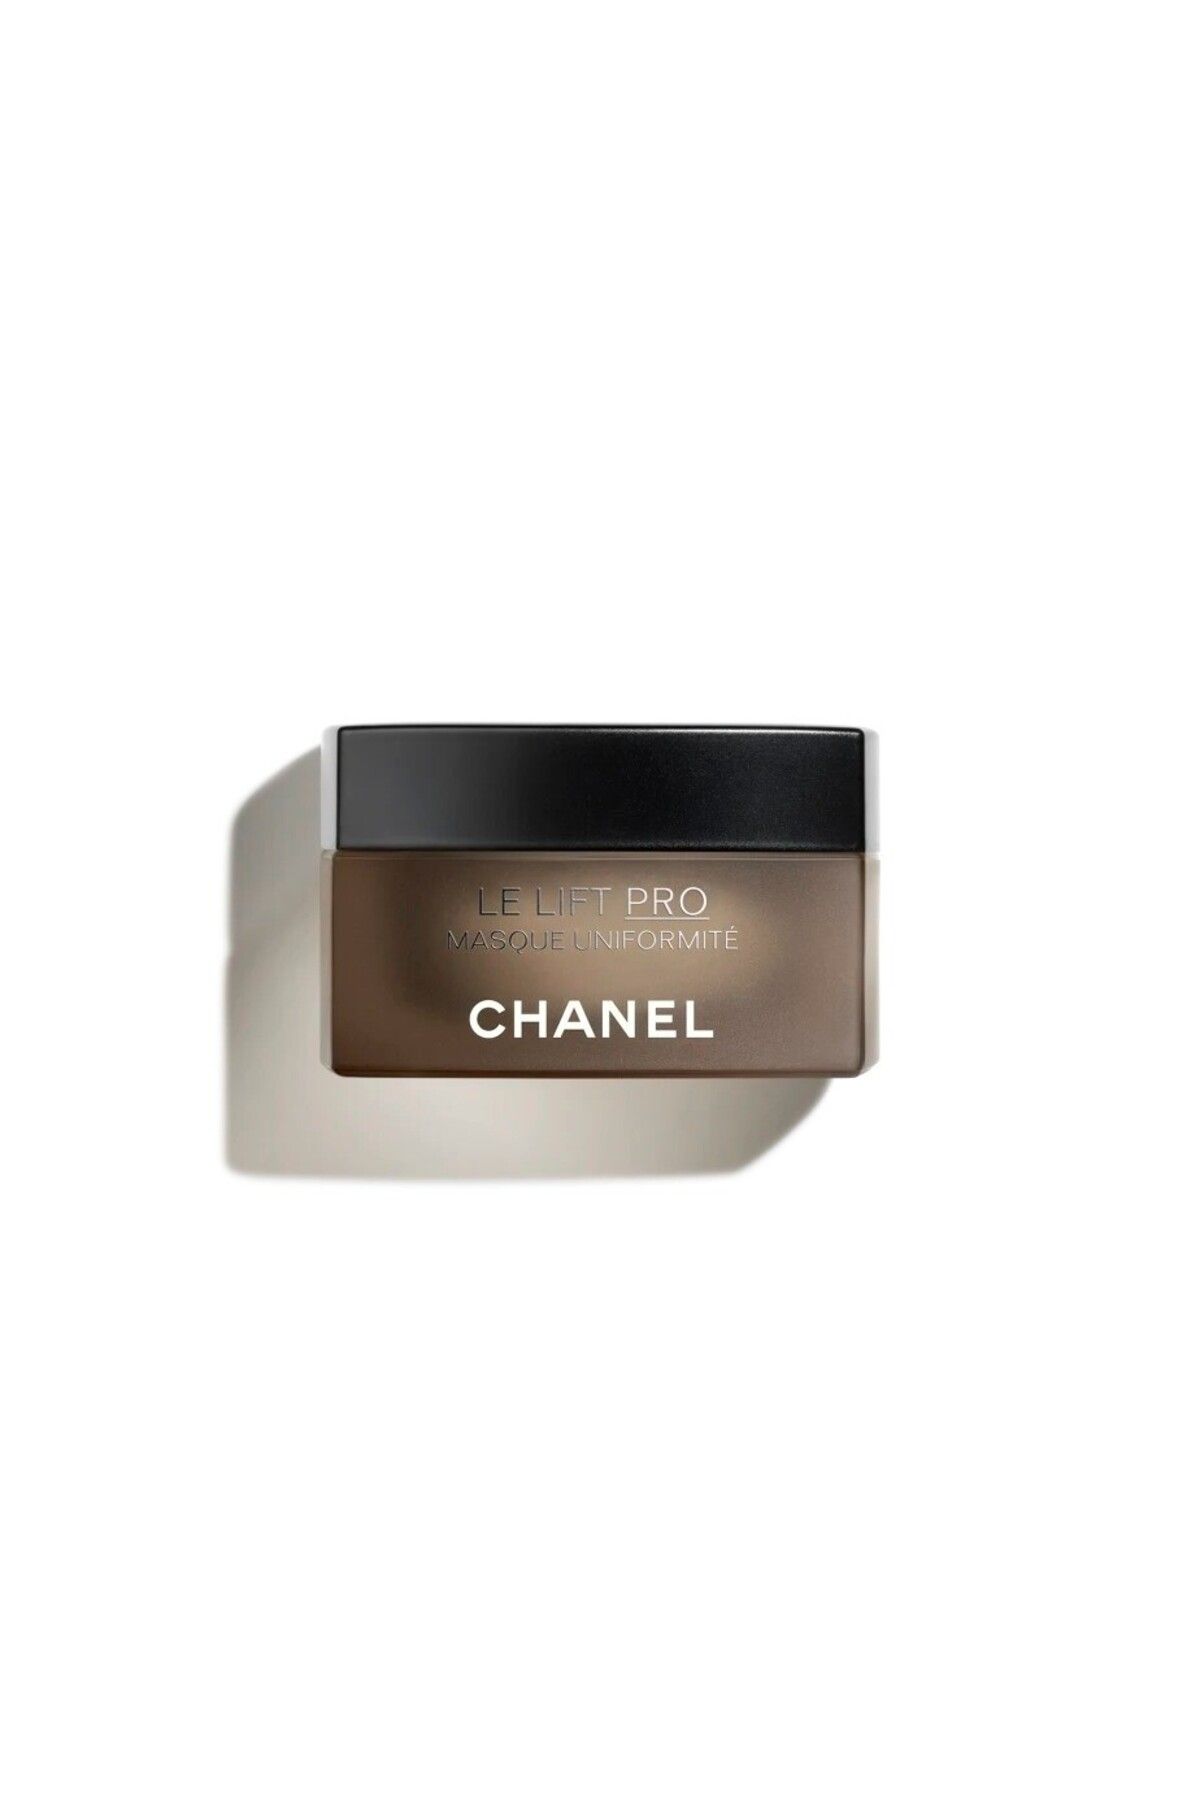 Chanel ماسک ضد لک لیفت پرو LE LIFT PRO رفع لکه های تیره و لیفت پوست ضد پیری 50 گرم